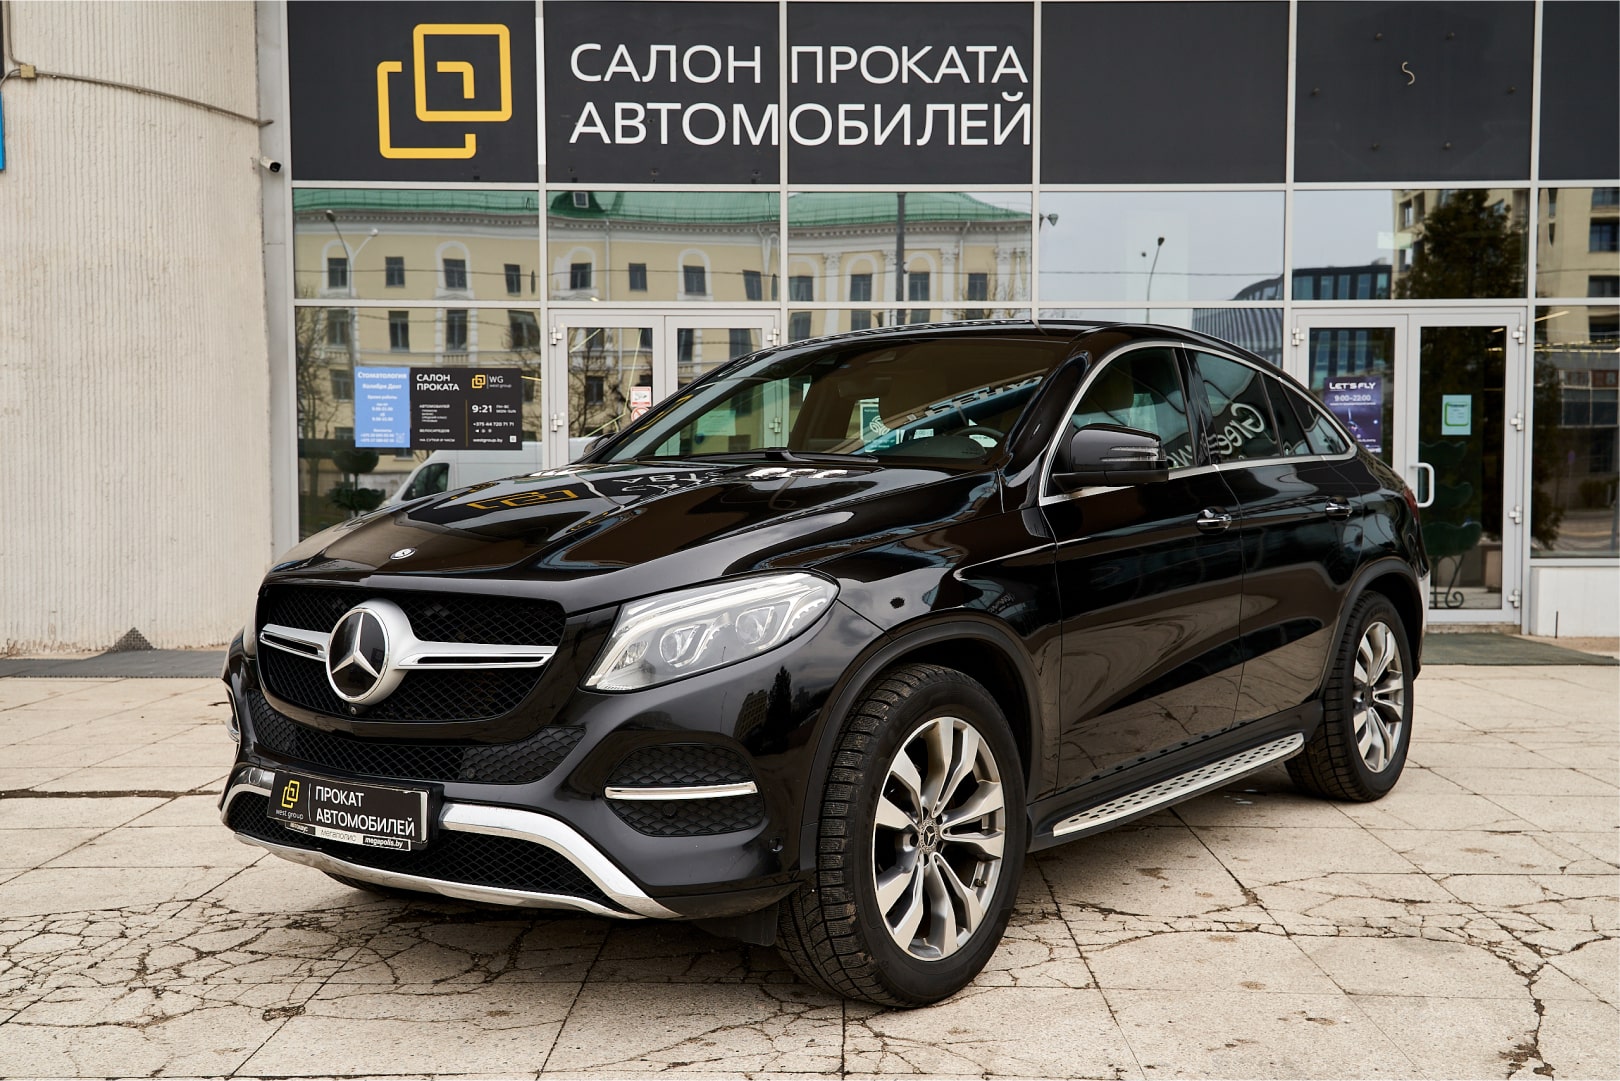 Аренда  Mercedes Benz GLE Coupe 4MATIC Limited Edition  6 класса 2018 года в городе Минск от 175 $/сутки,  двигатель: ДТ , объем 3.0 литров, КАСКО (Мультидрайв), без водителя, вид 1 - West Group